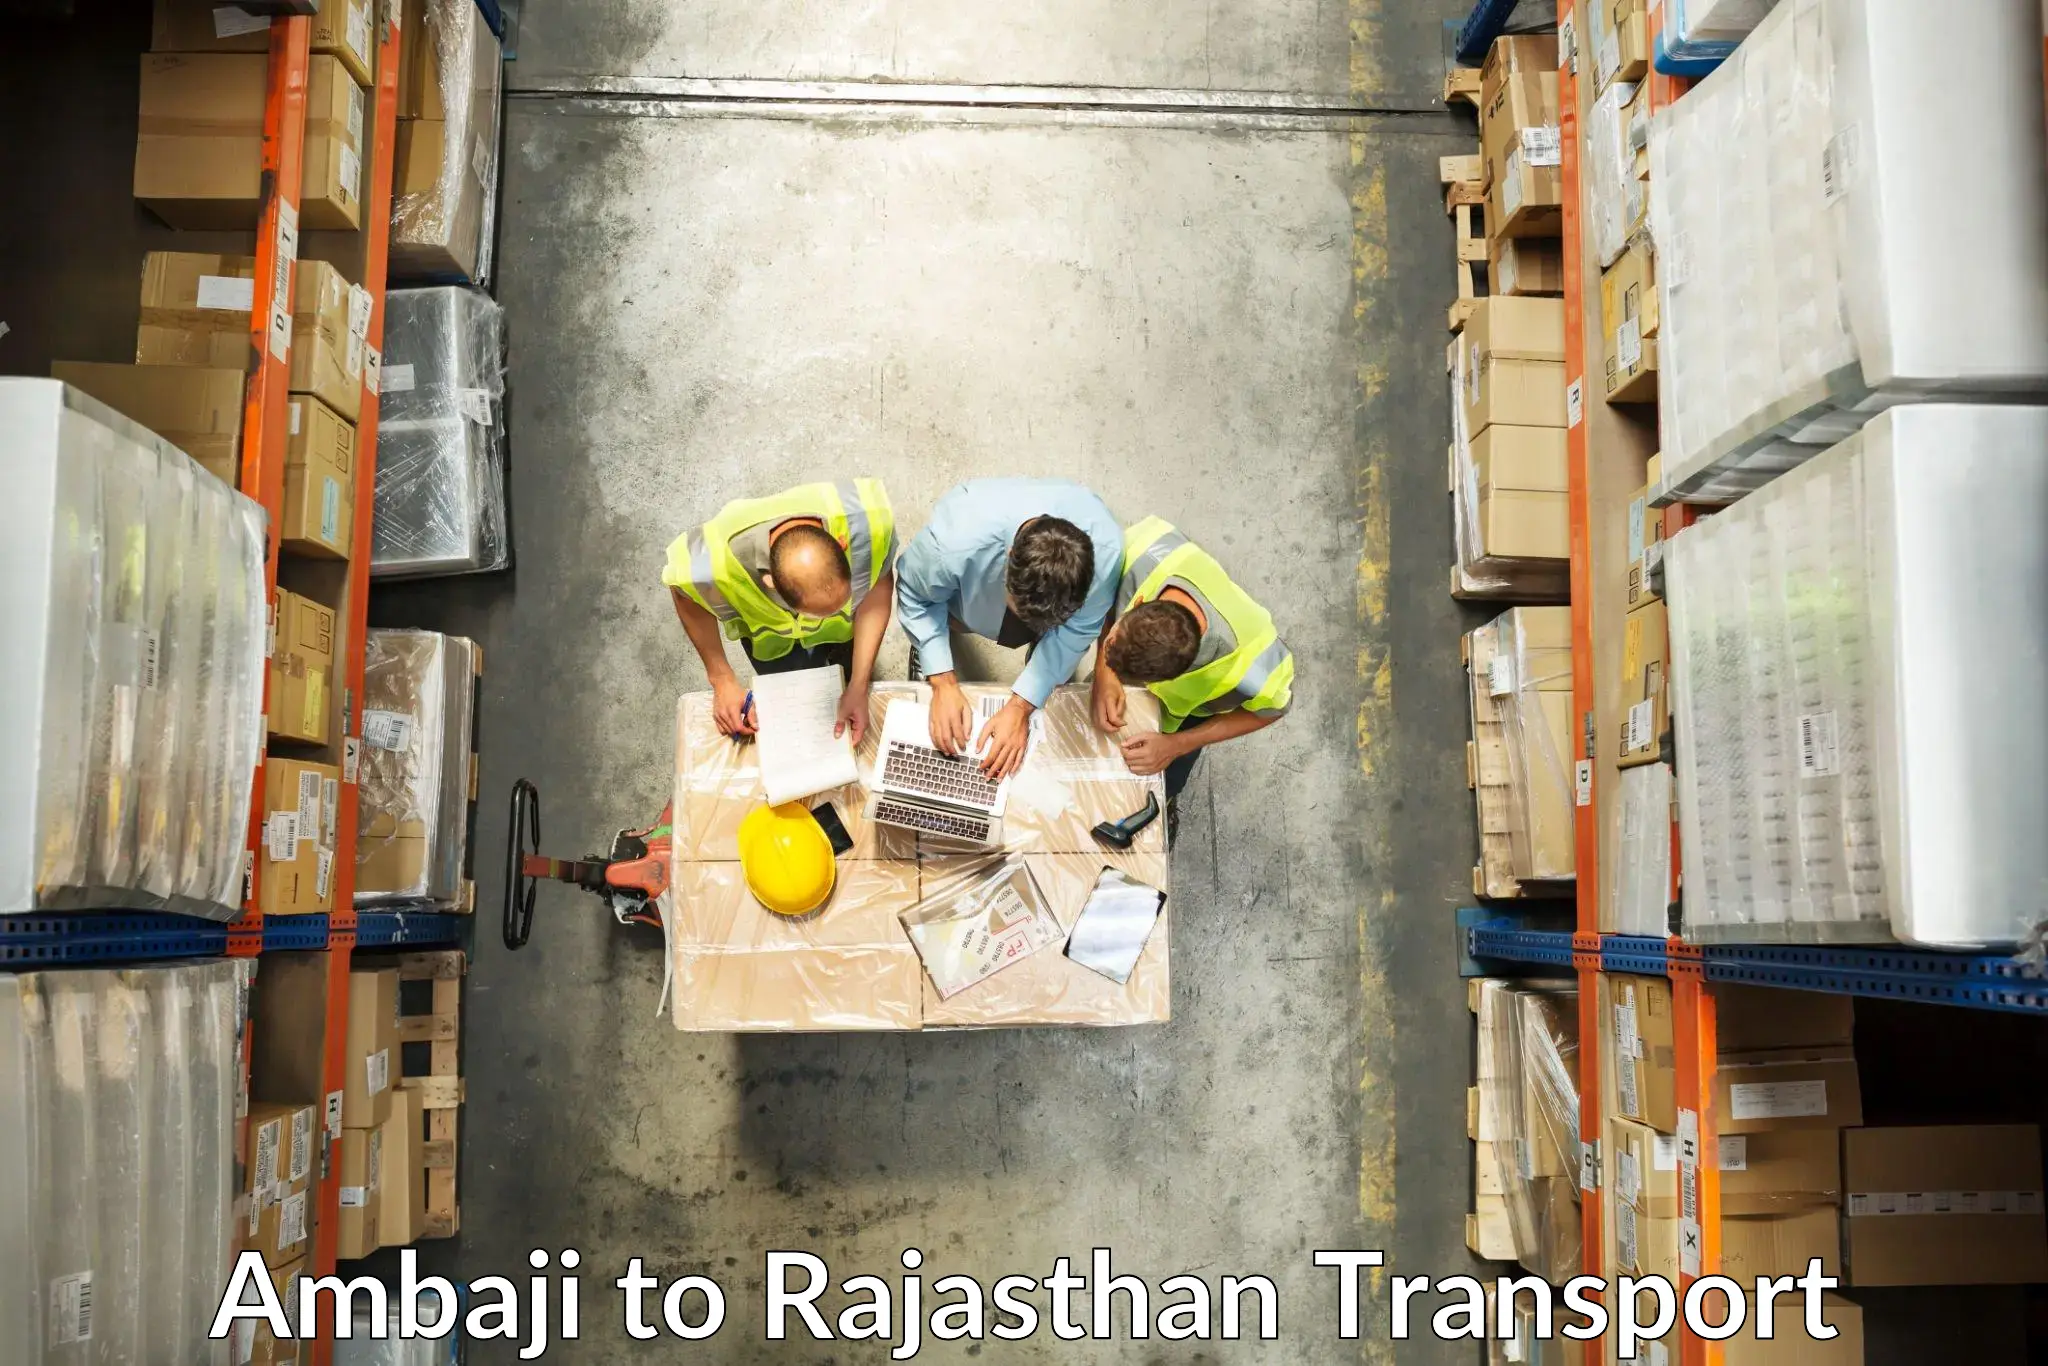 Express transport services Ambaji to Rajasthan